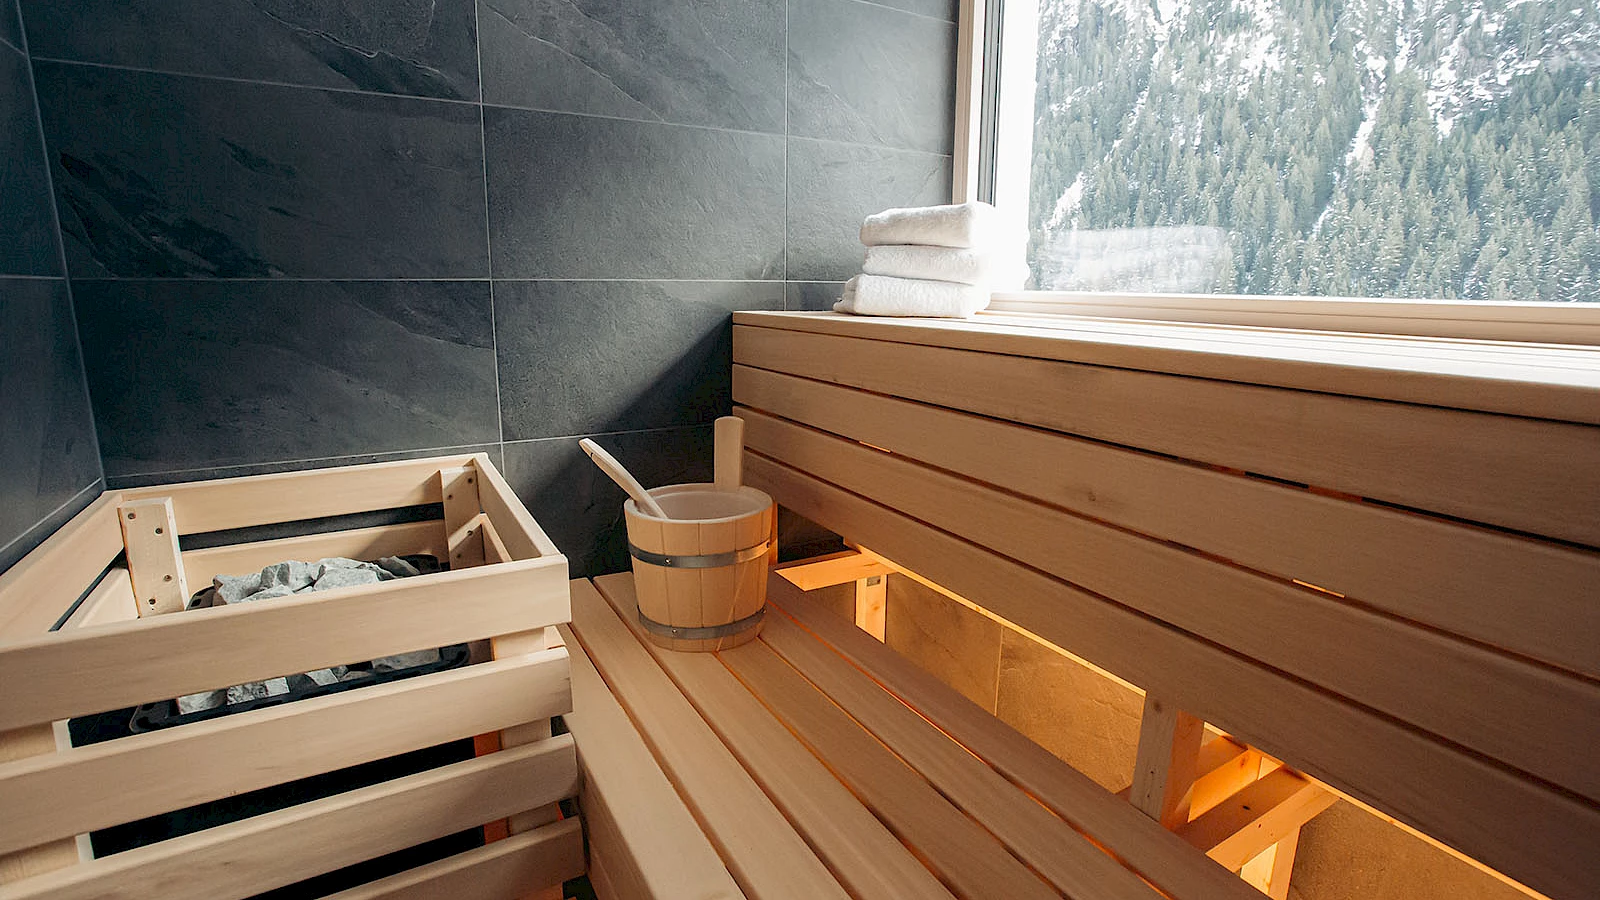 Private Sauna im Ferienhaus Ischgl. Hier können Sie ungestört saunieren.